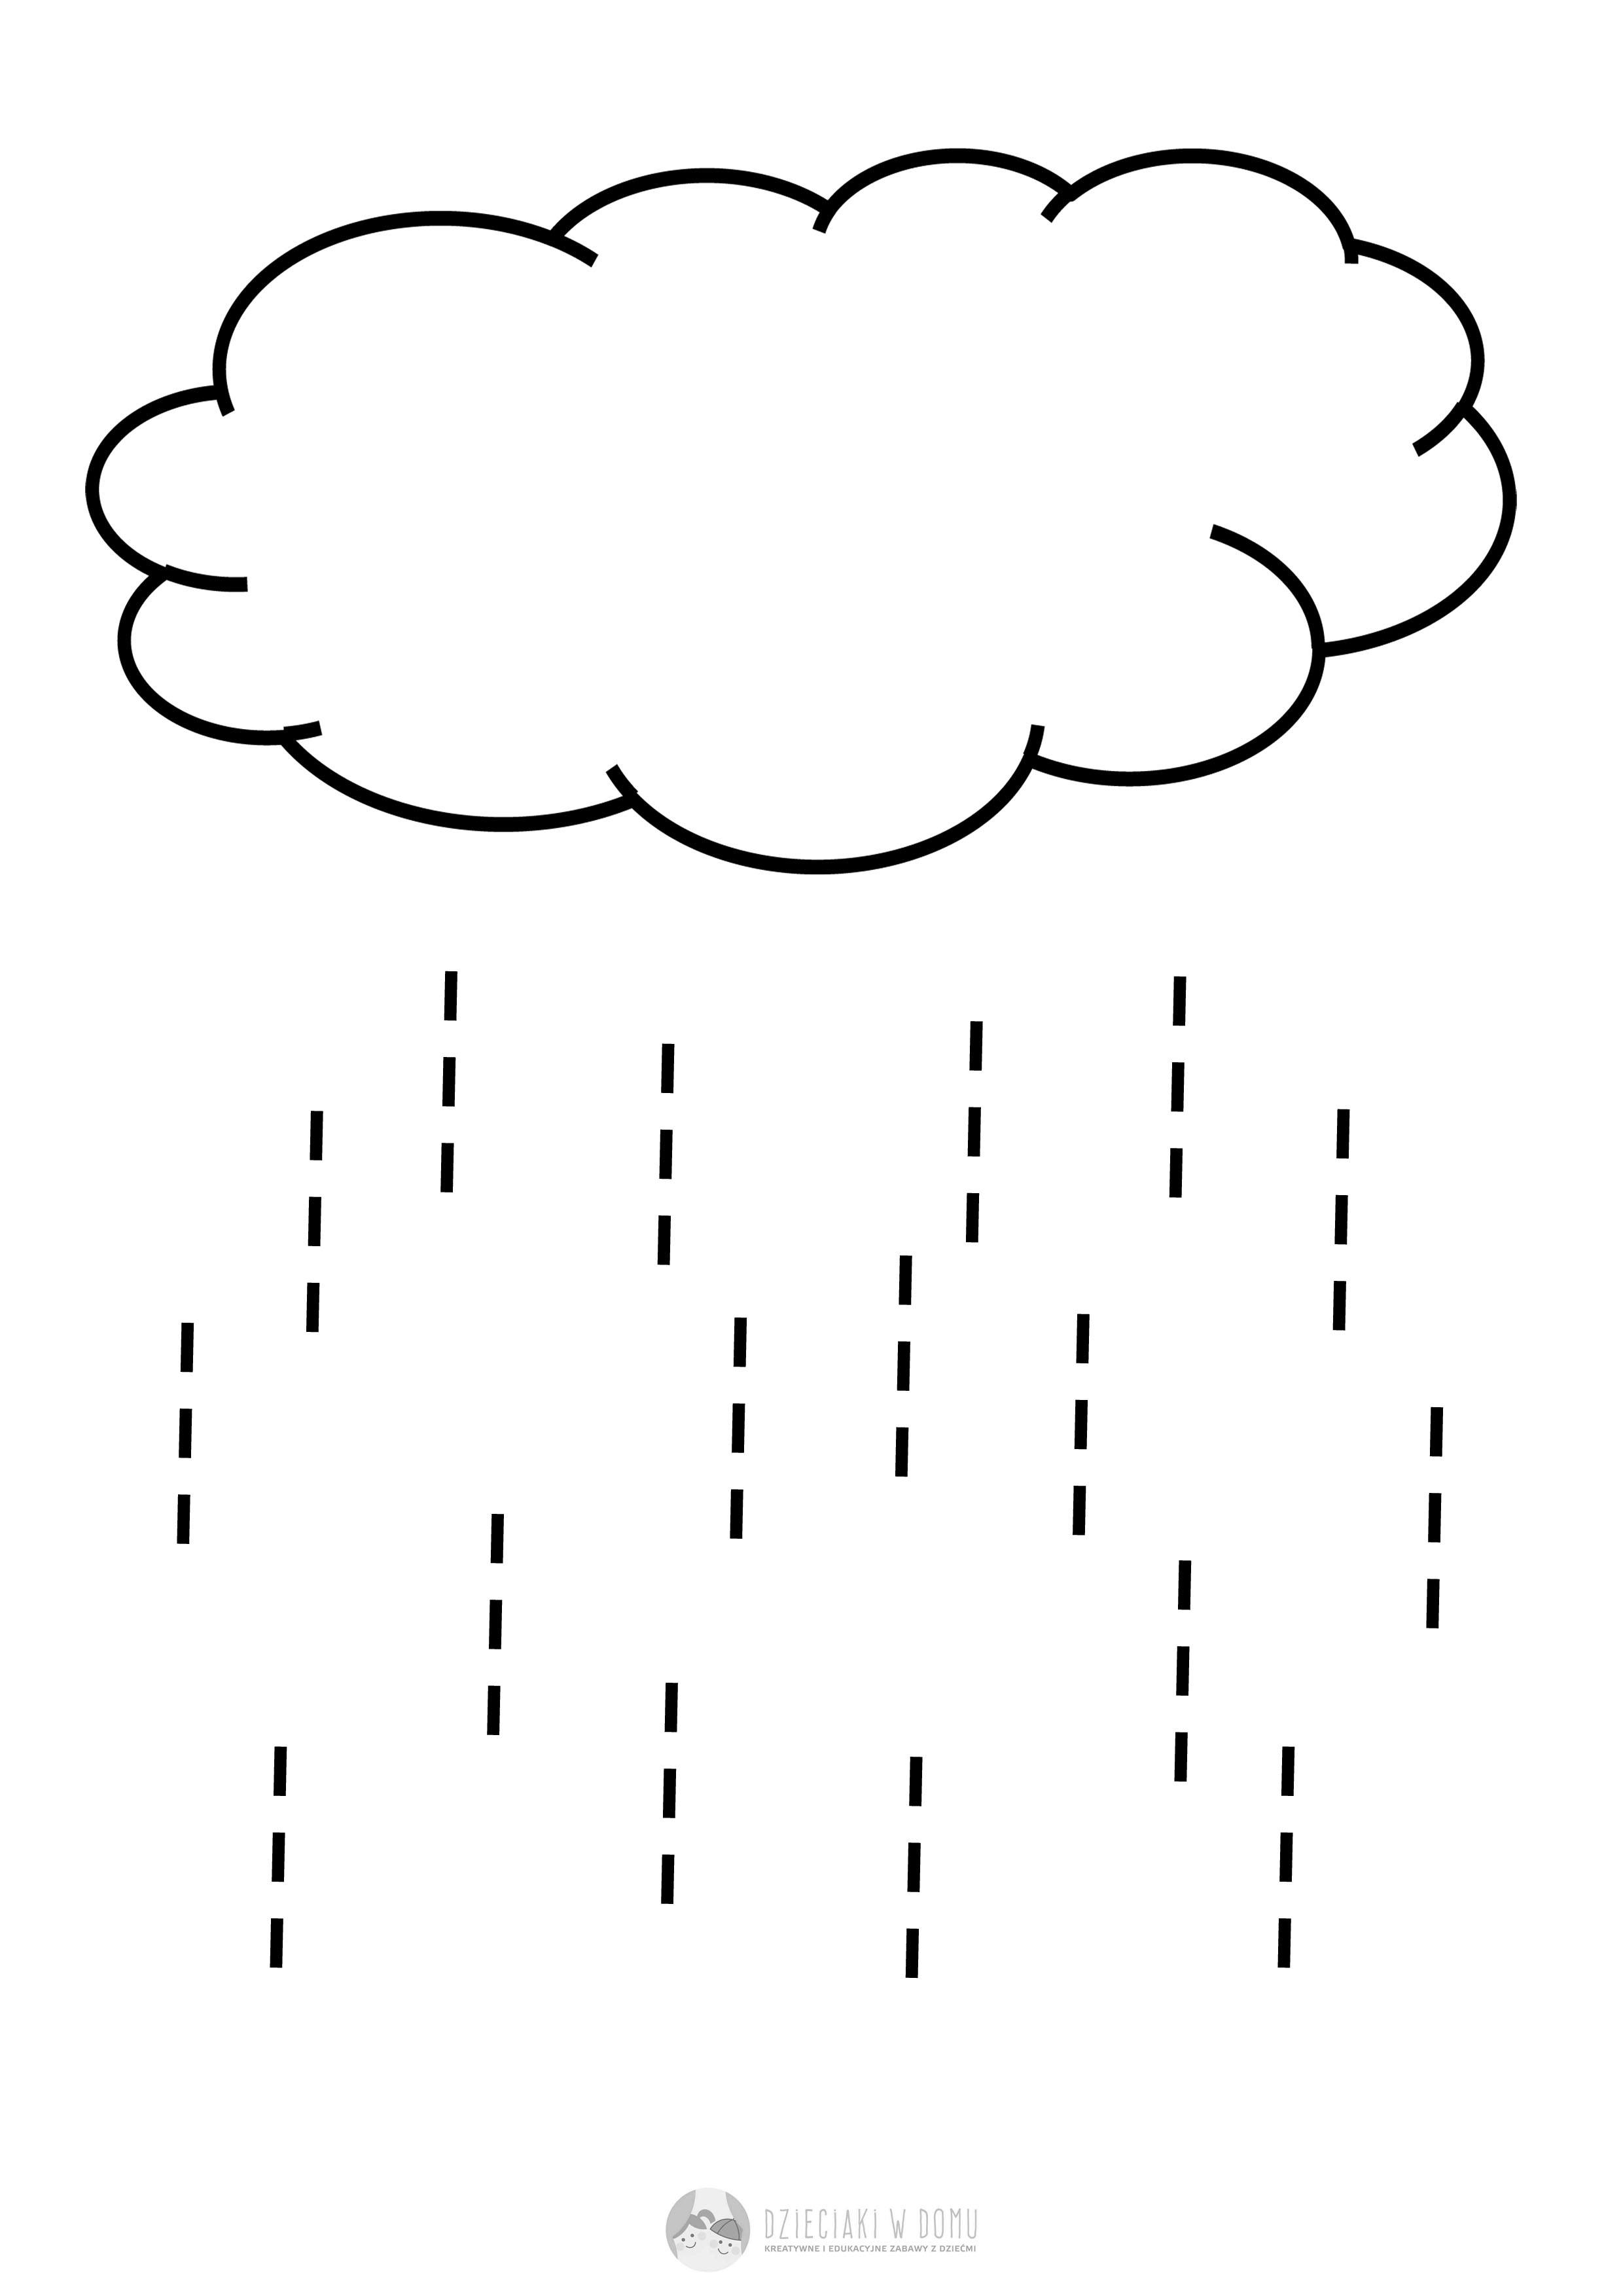 Chmura i krople deszczu - karta pracy dla 2-3 latka